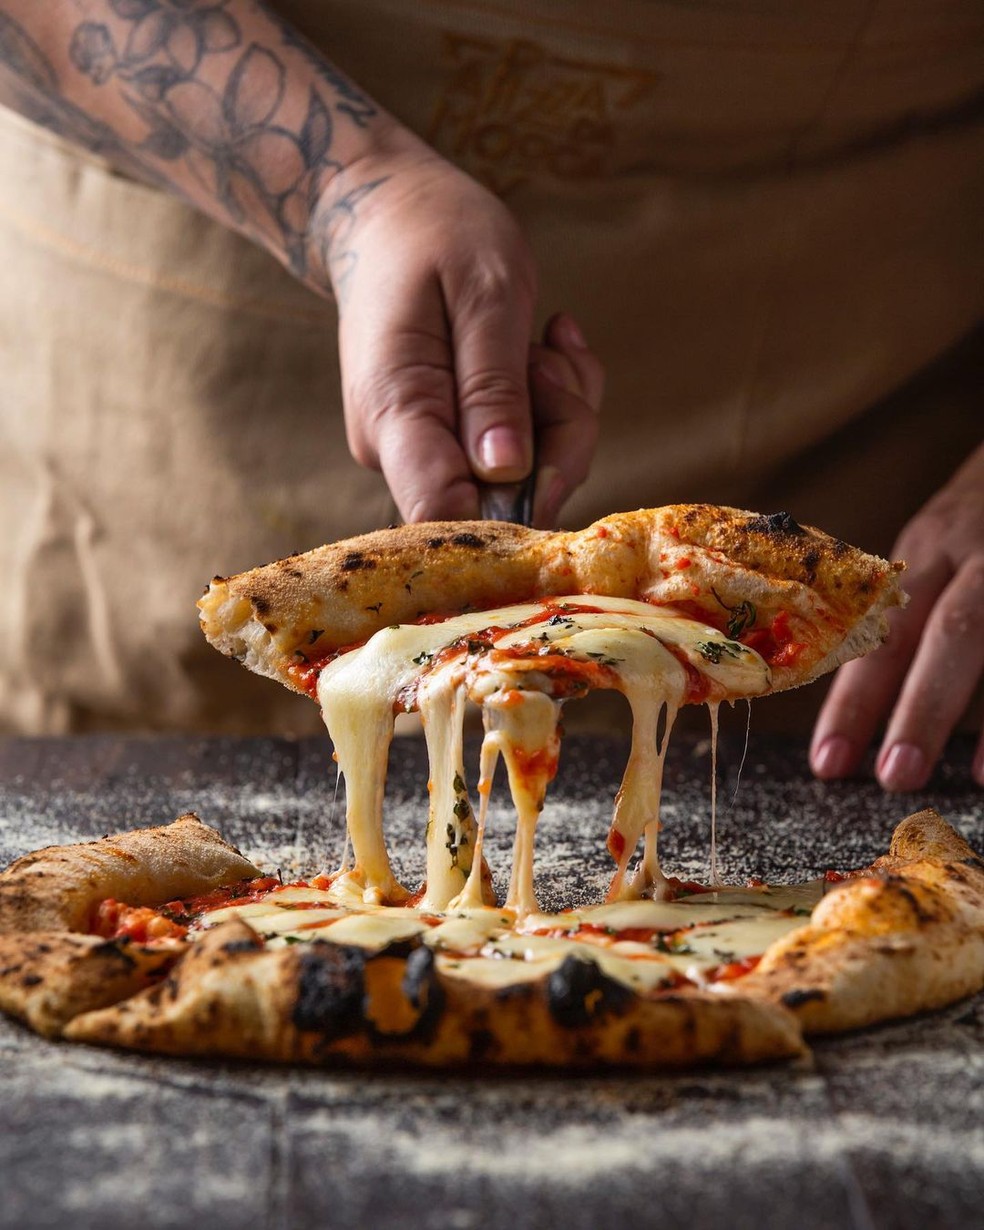 Os 10 melhores pizzarias São Paulo - Tripadvisor